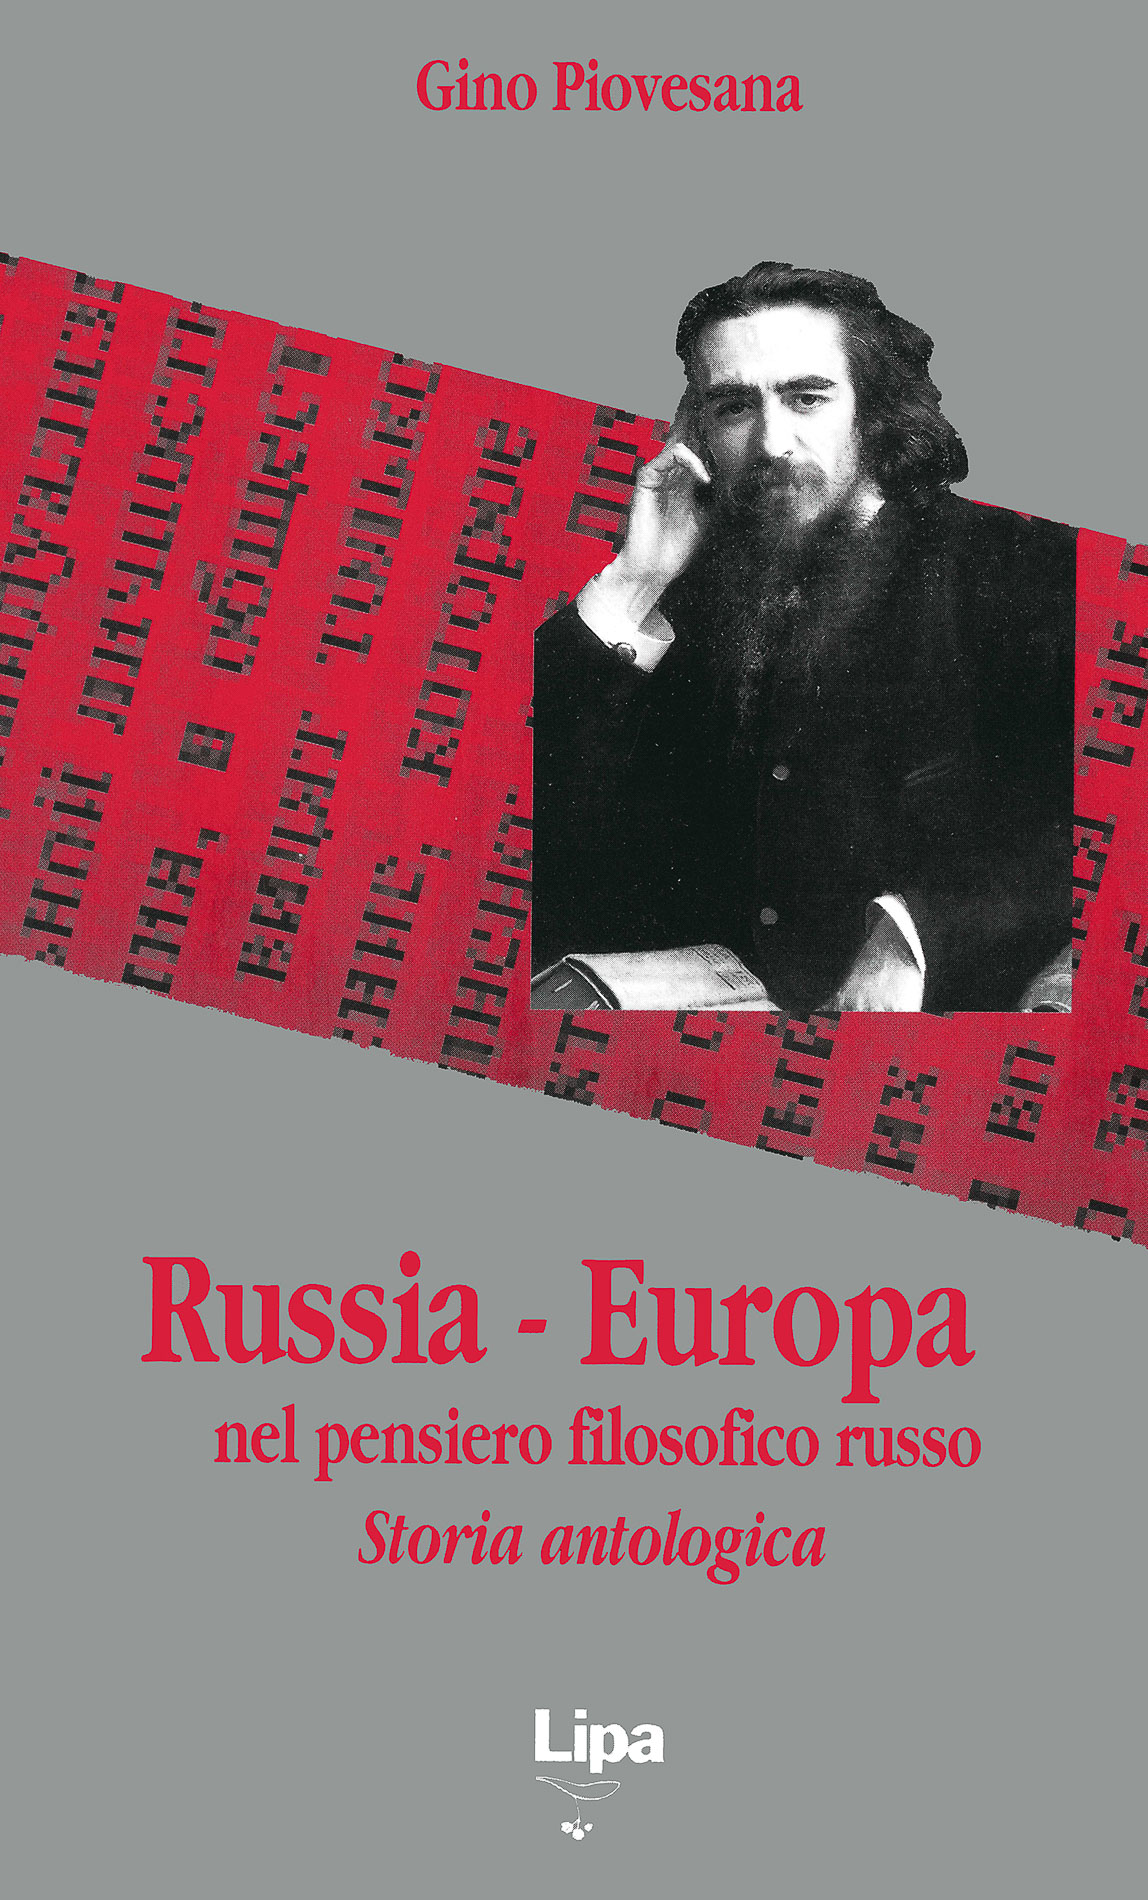 Copertina del libro "Russia-Europa"